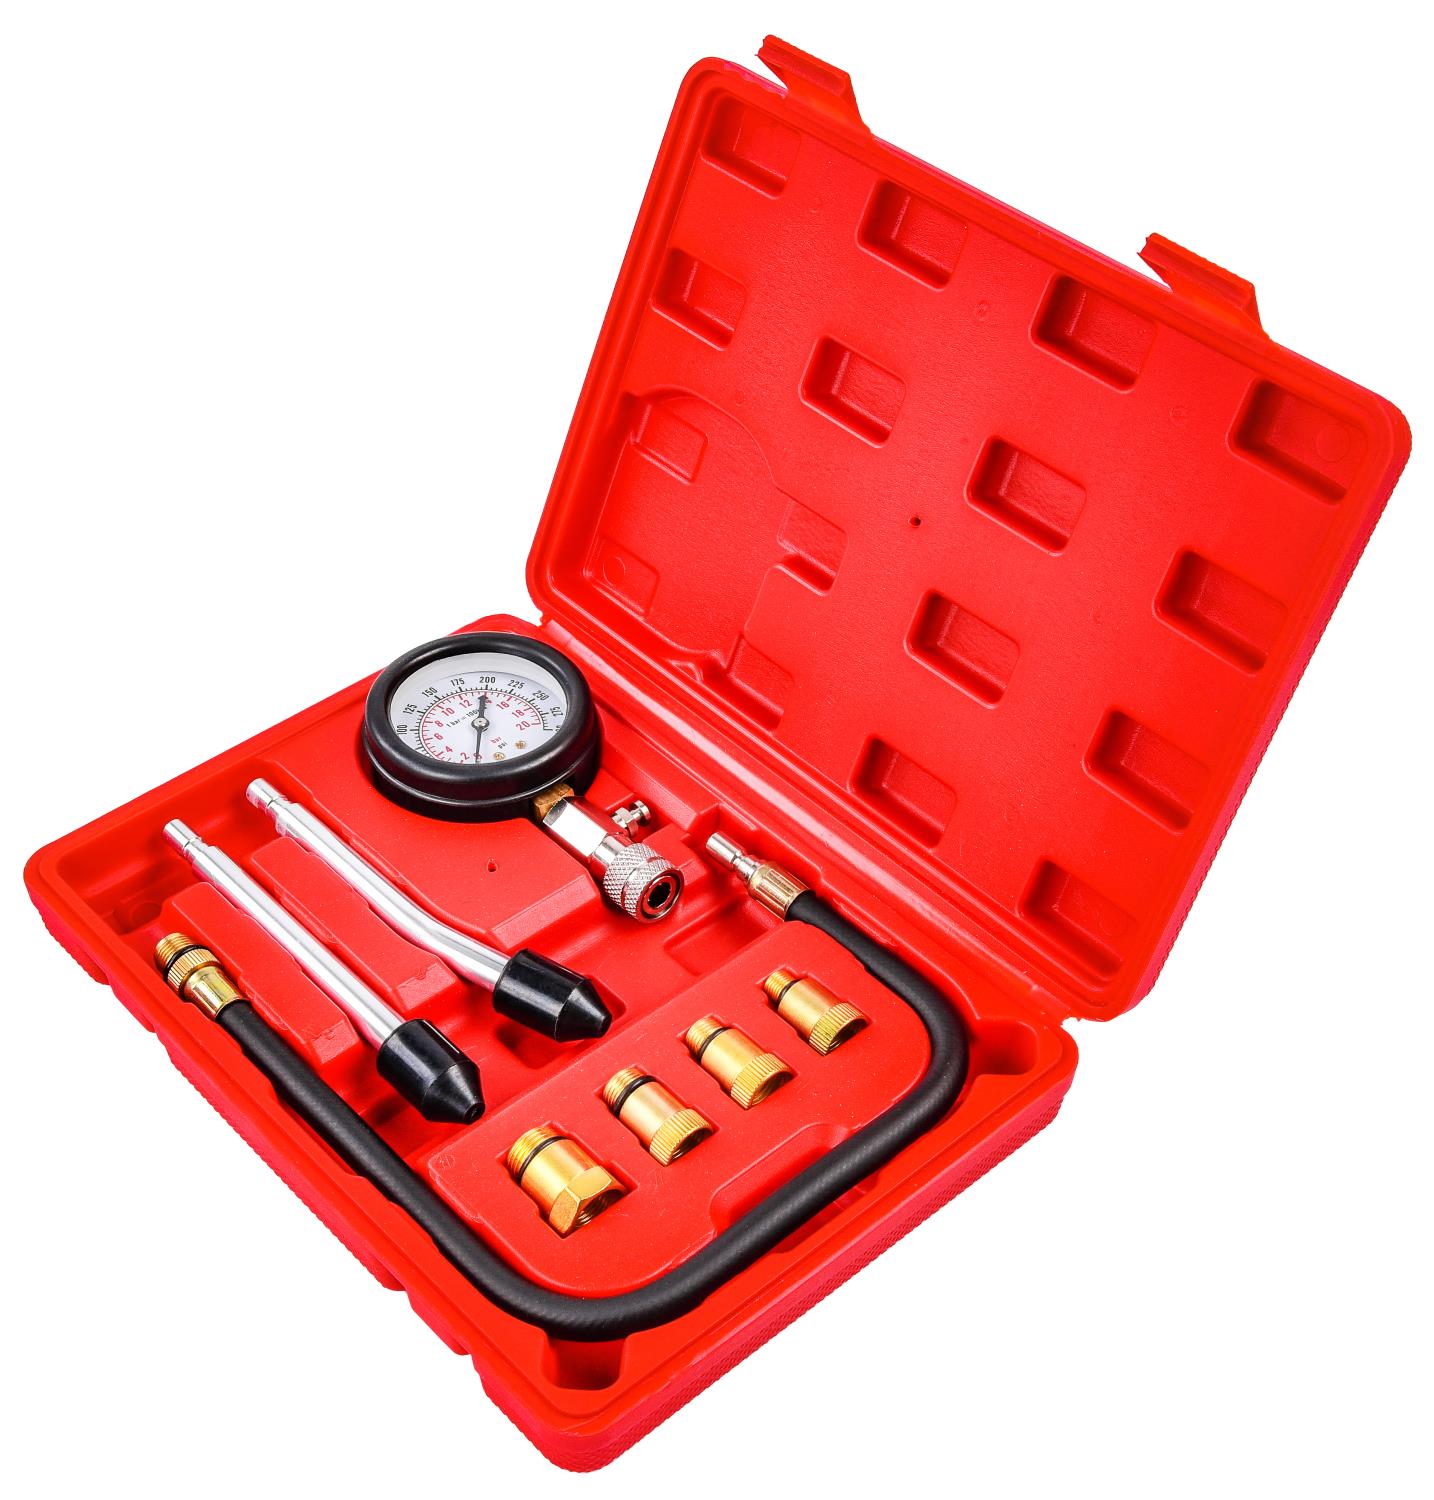 5606-DG Digital Compression Tester Kit